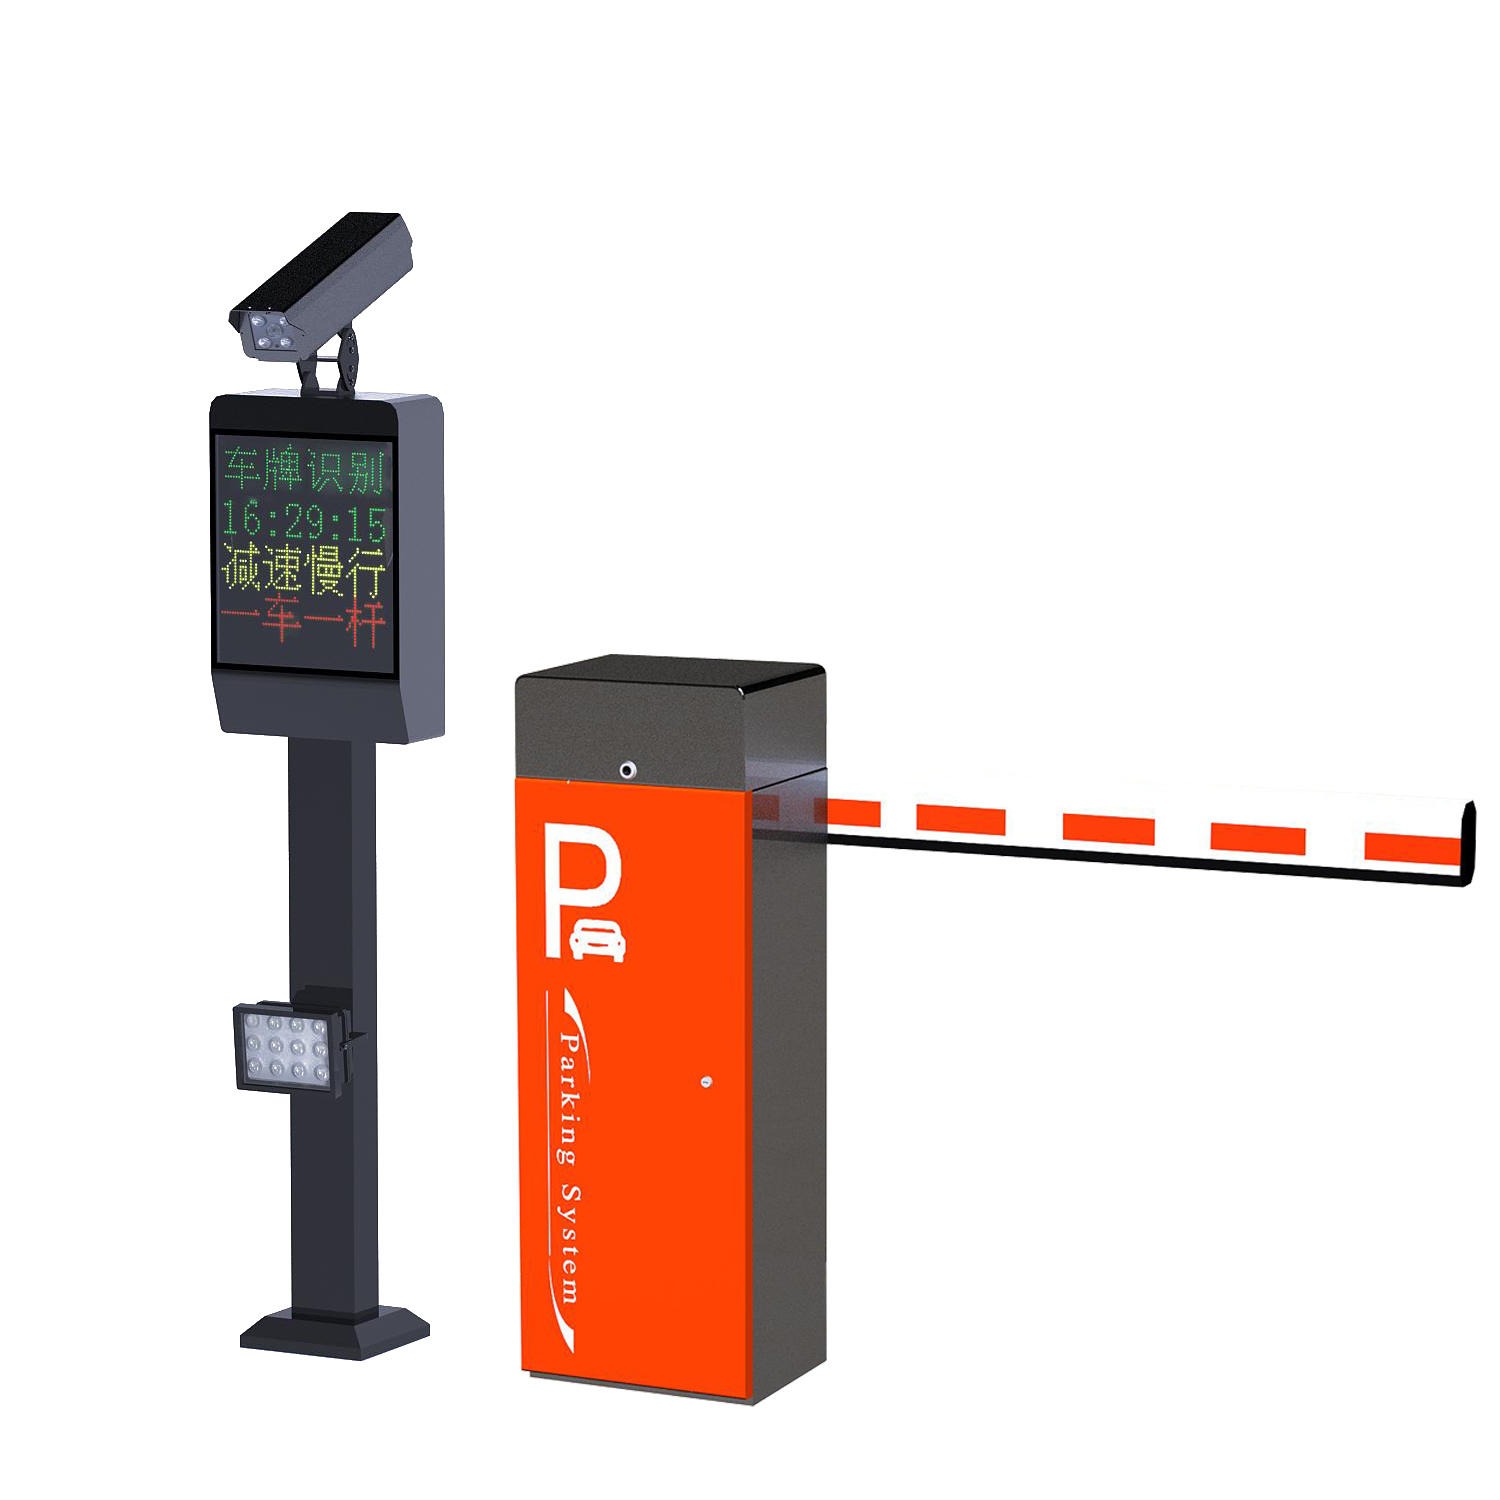 凌卡停车场系统 车牌识别一体机 LK-108AD 智能停车场系统 车牌识别系统 停车场管理系统